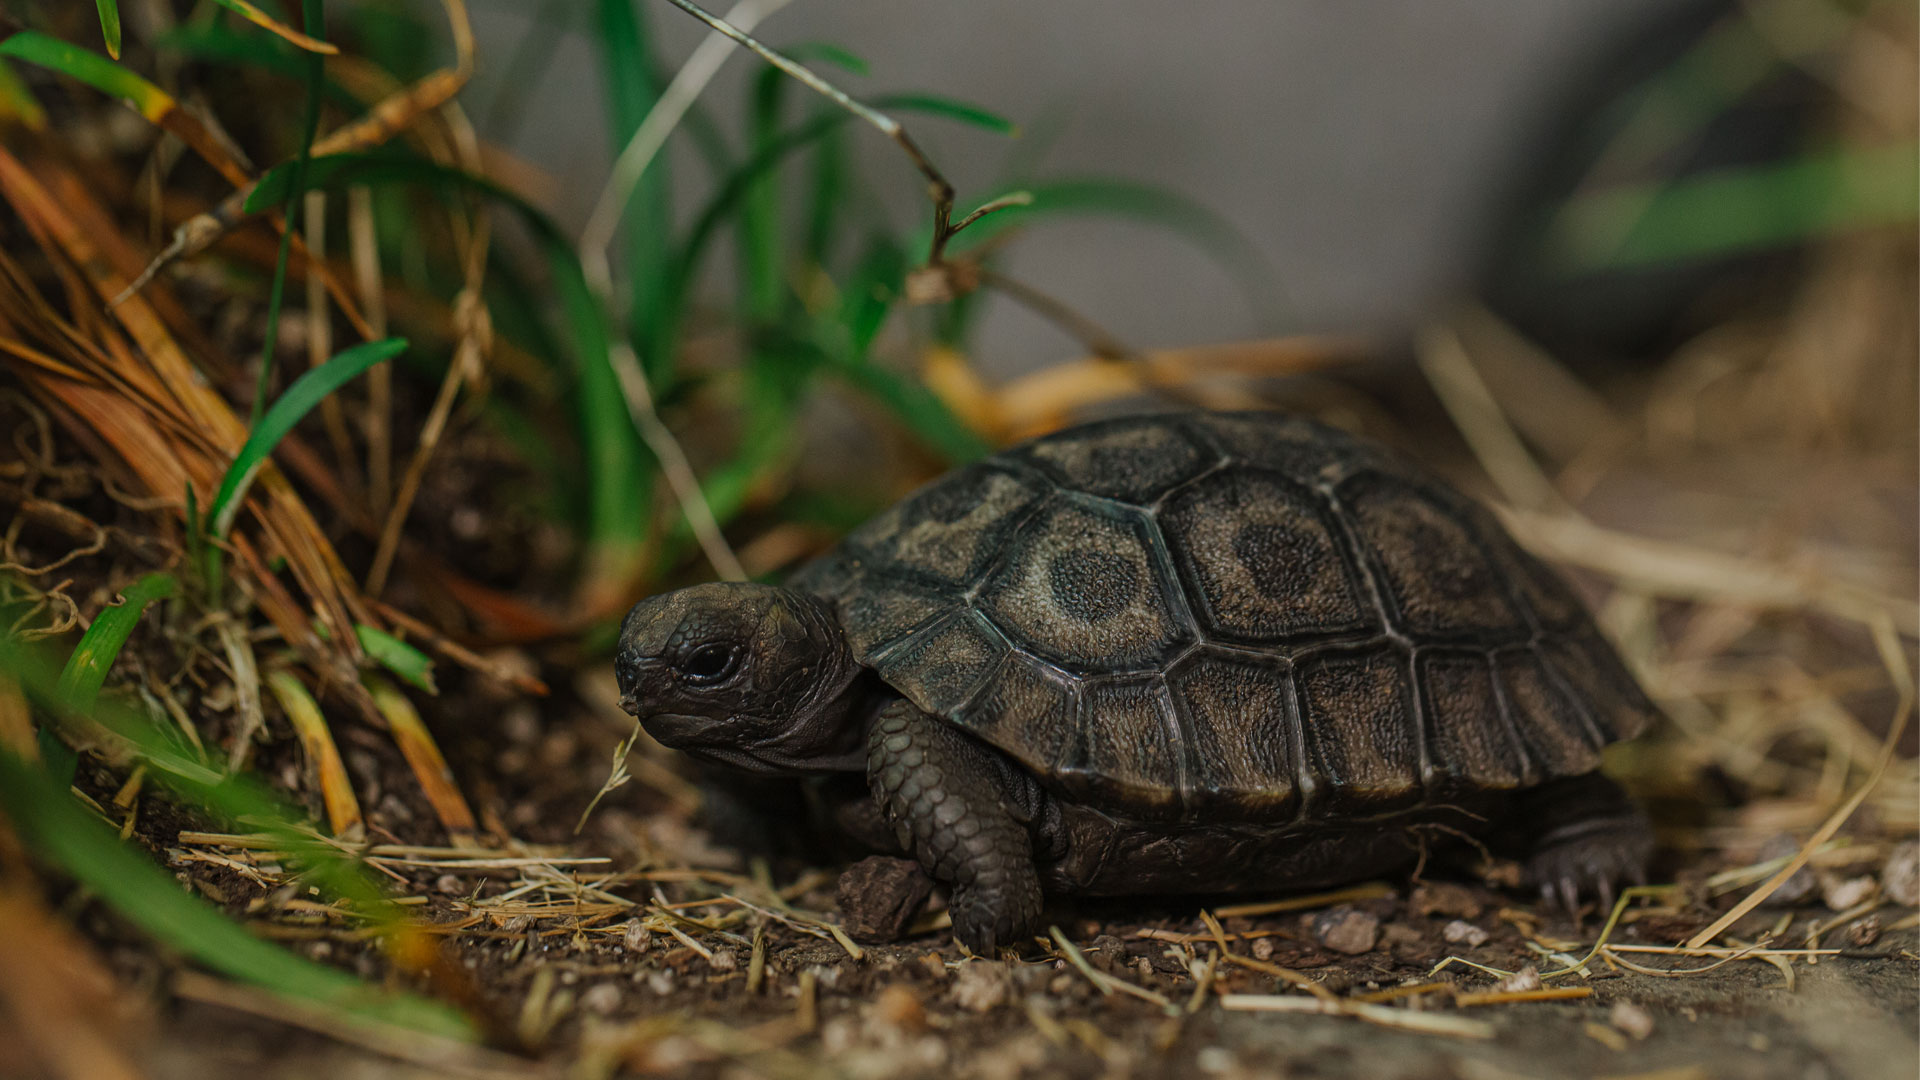 https://rfacdn.nz/zoo/assets/media/galapagos-tortoise-hatchlings-gallery-1.jpg